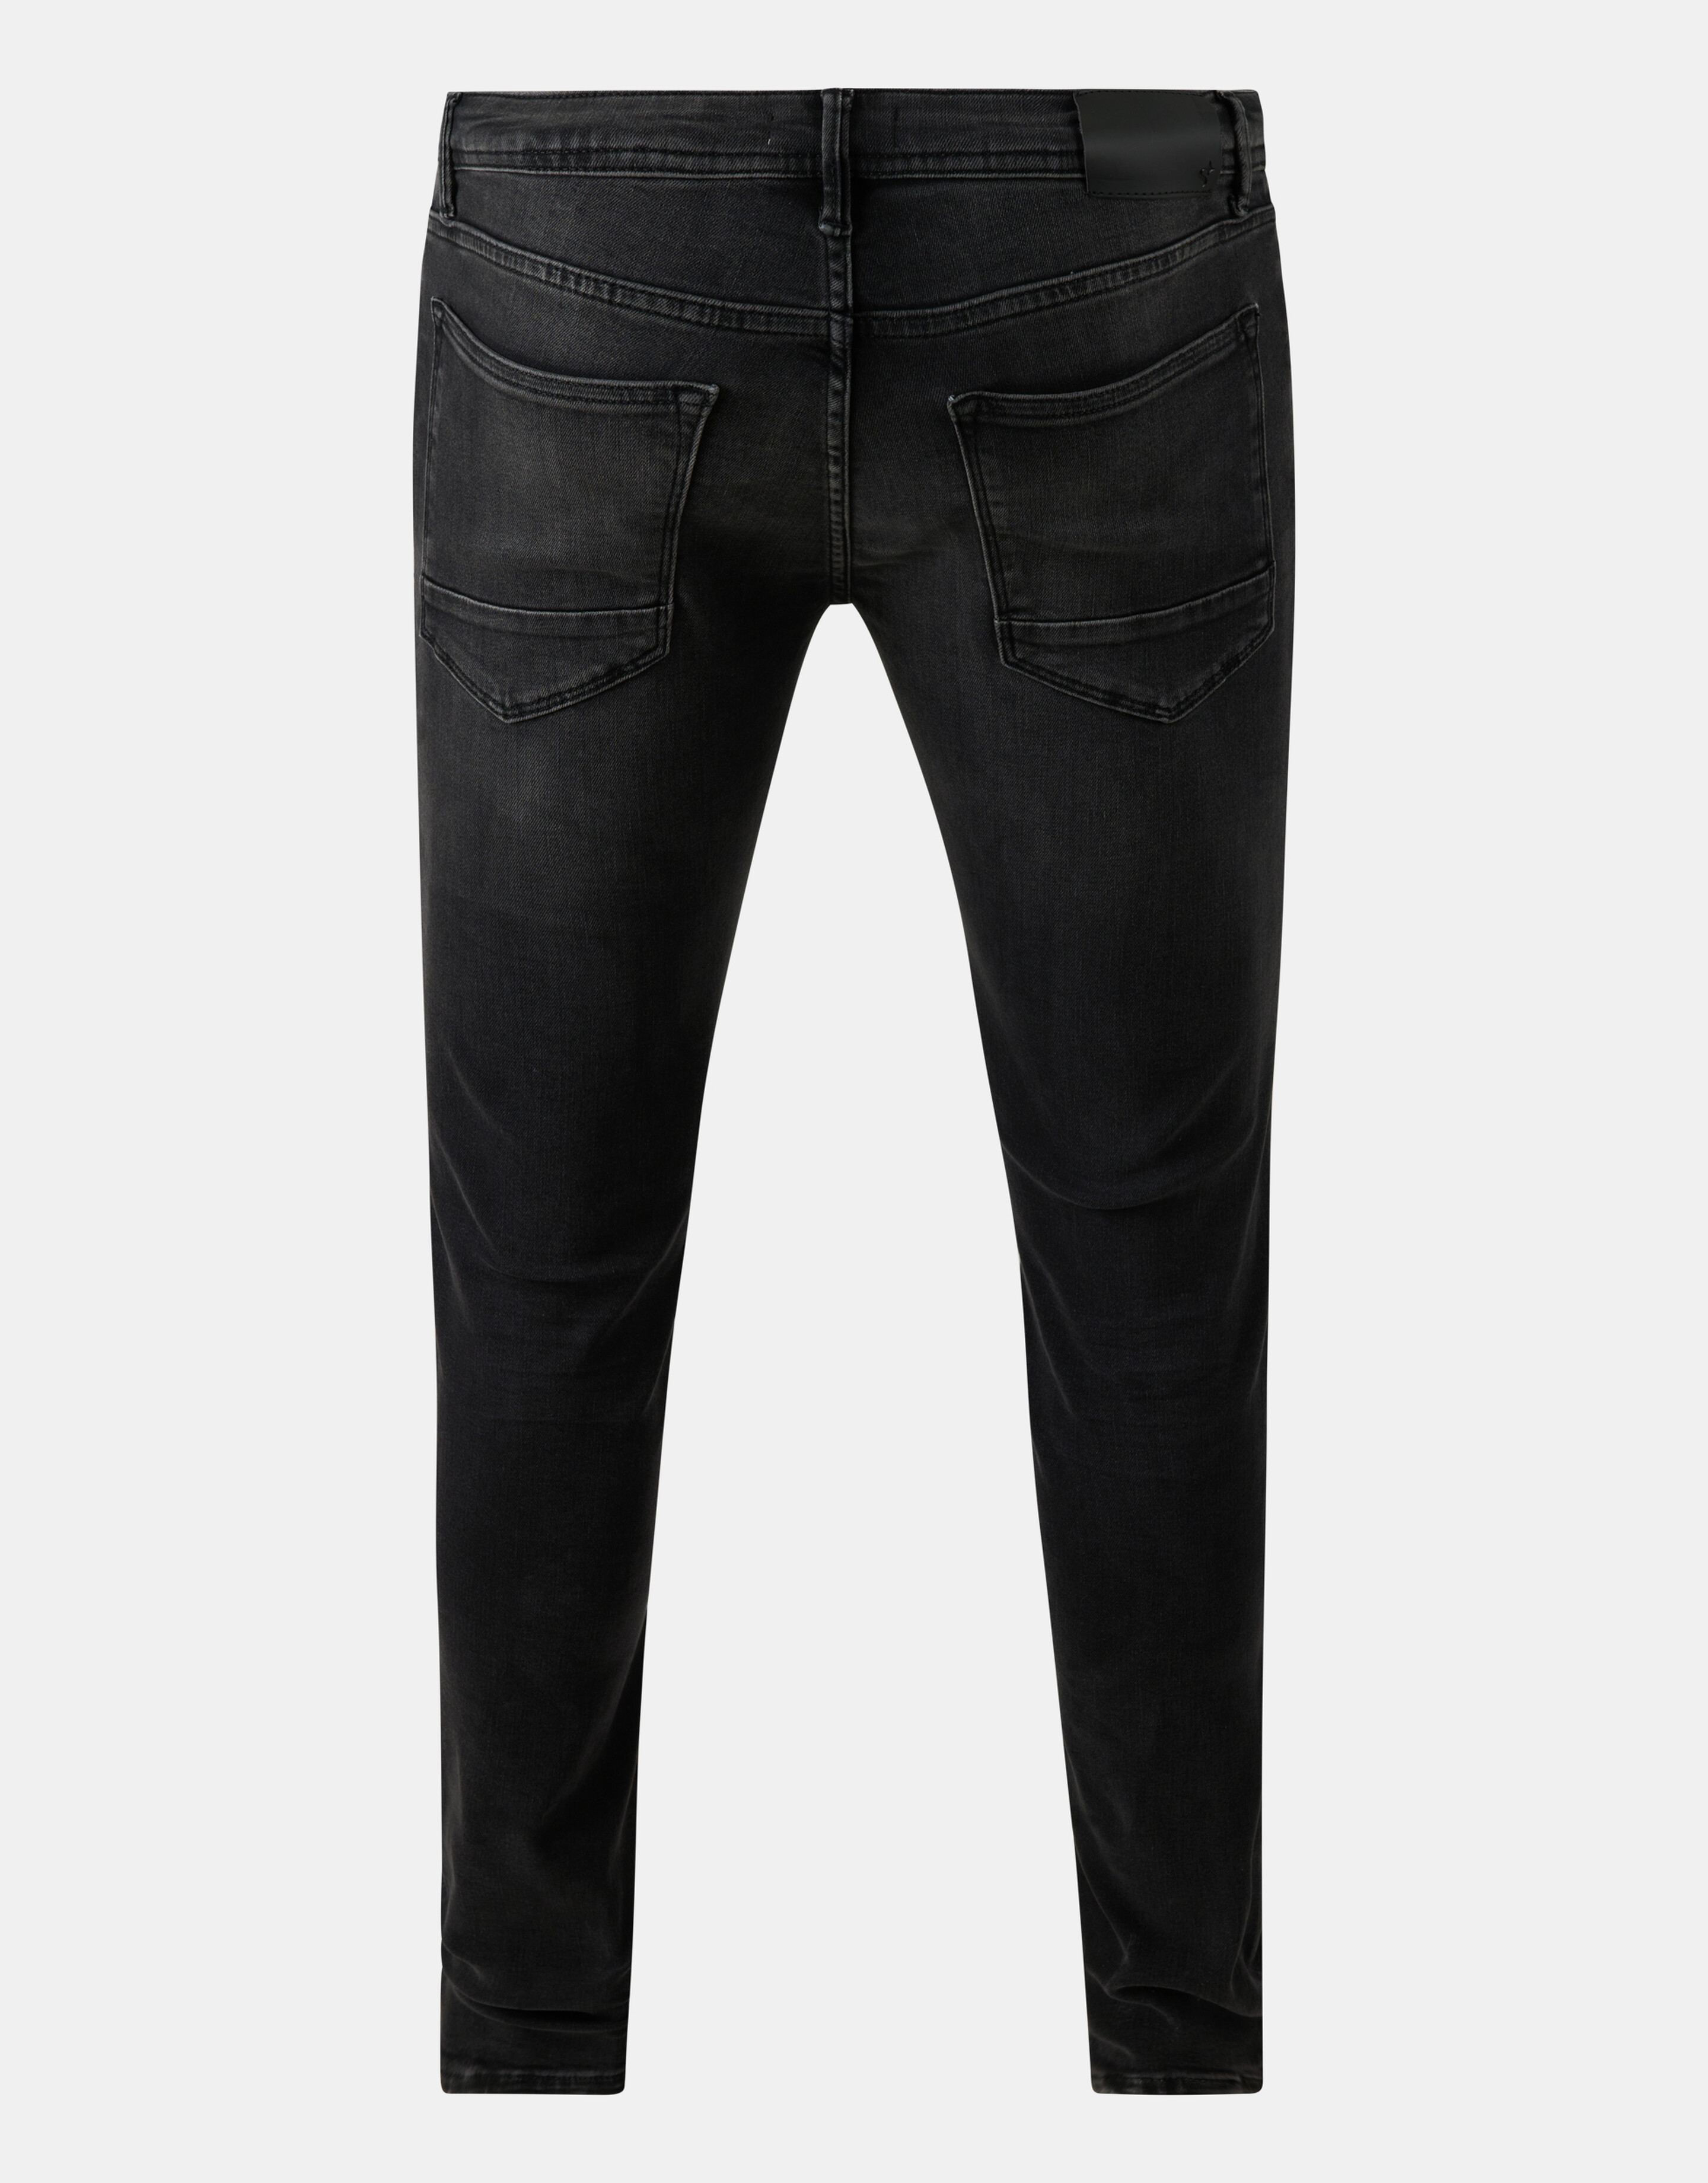 Slim Jeans Jack Washed Black L34 Refill